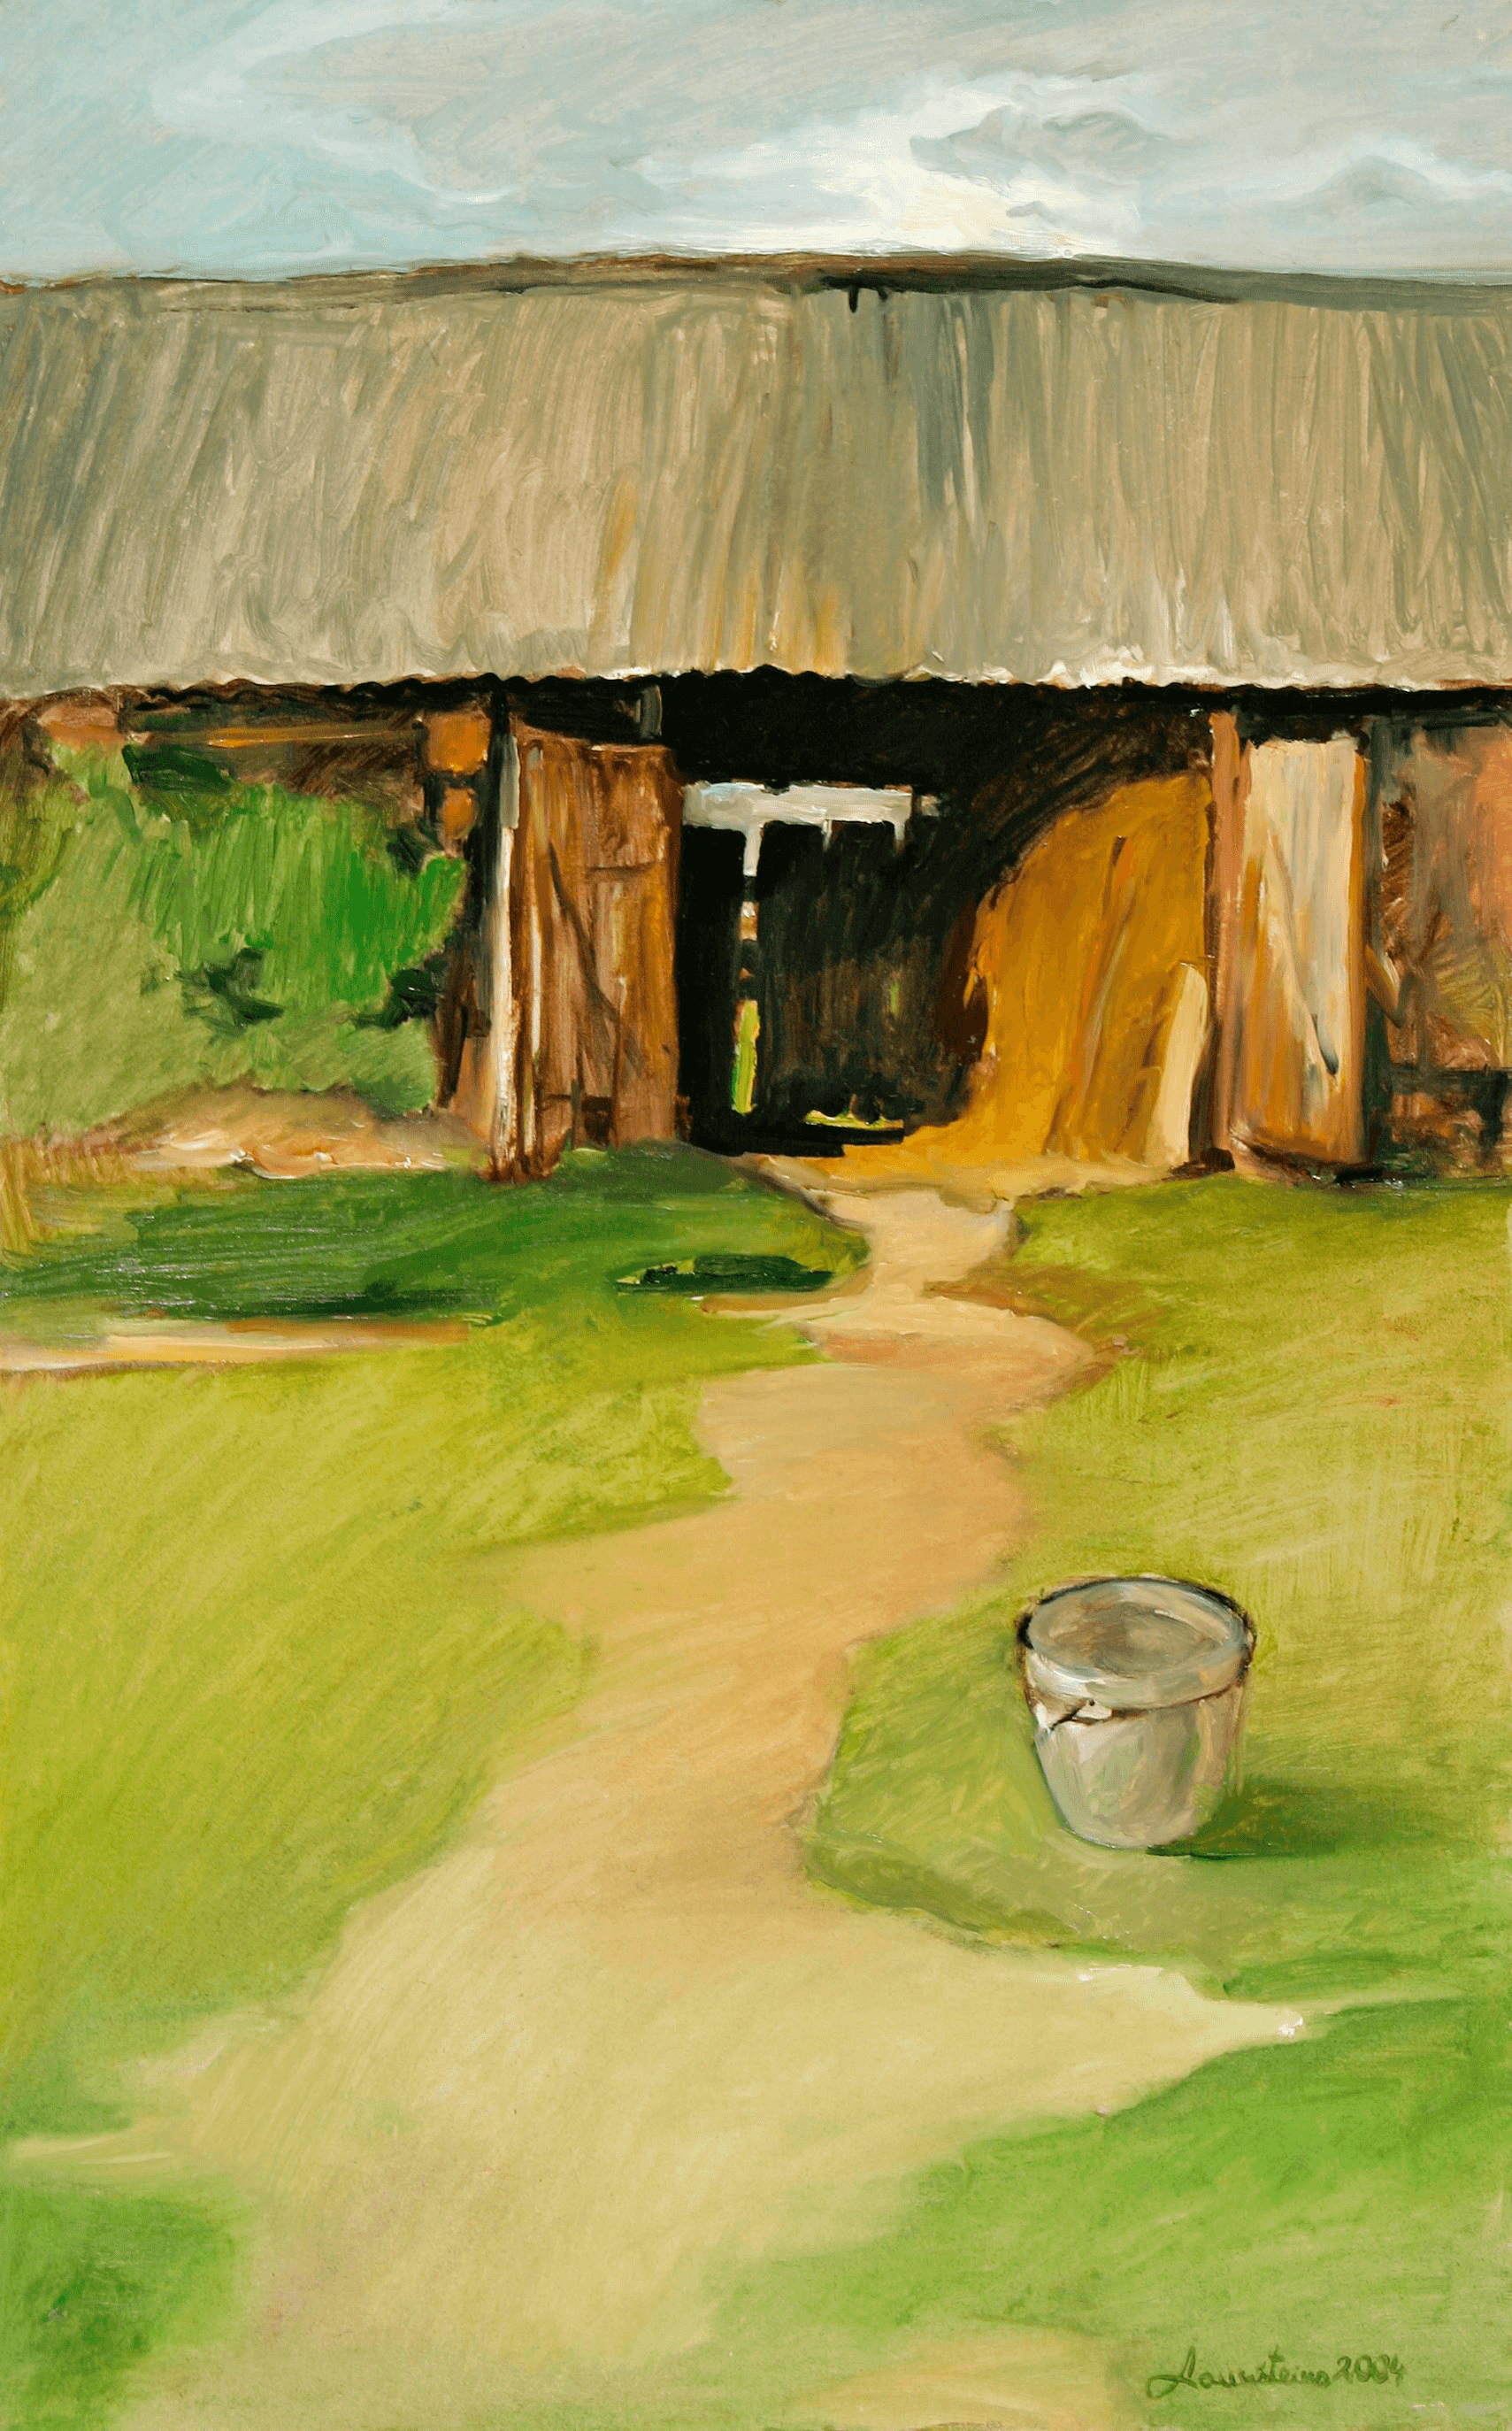 Trail through the barn